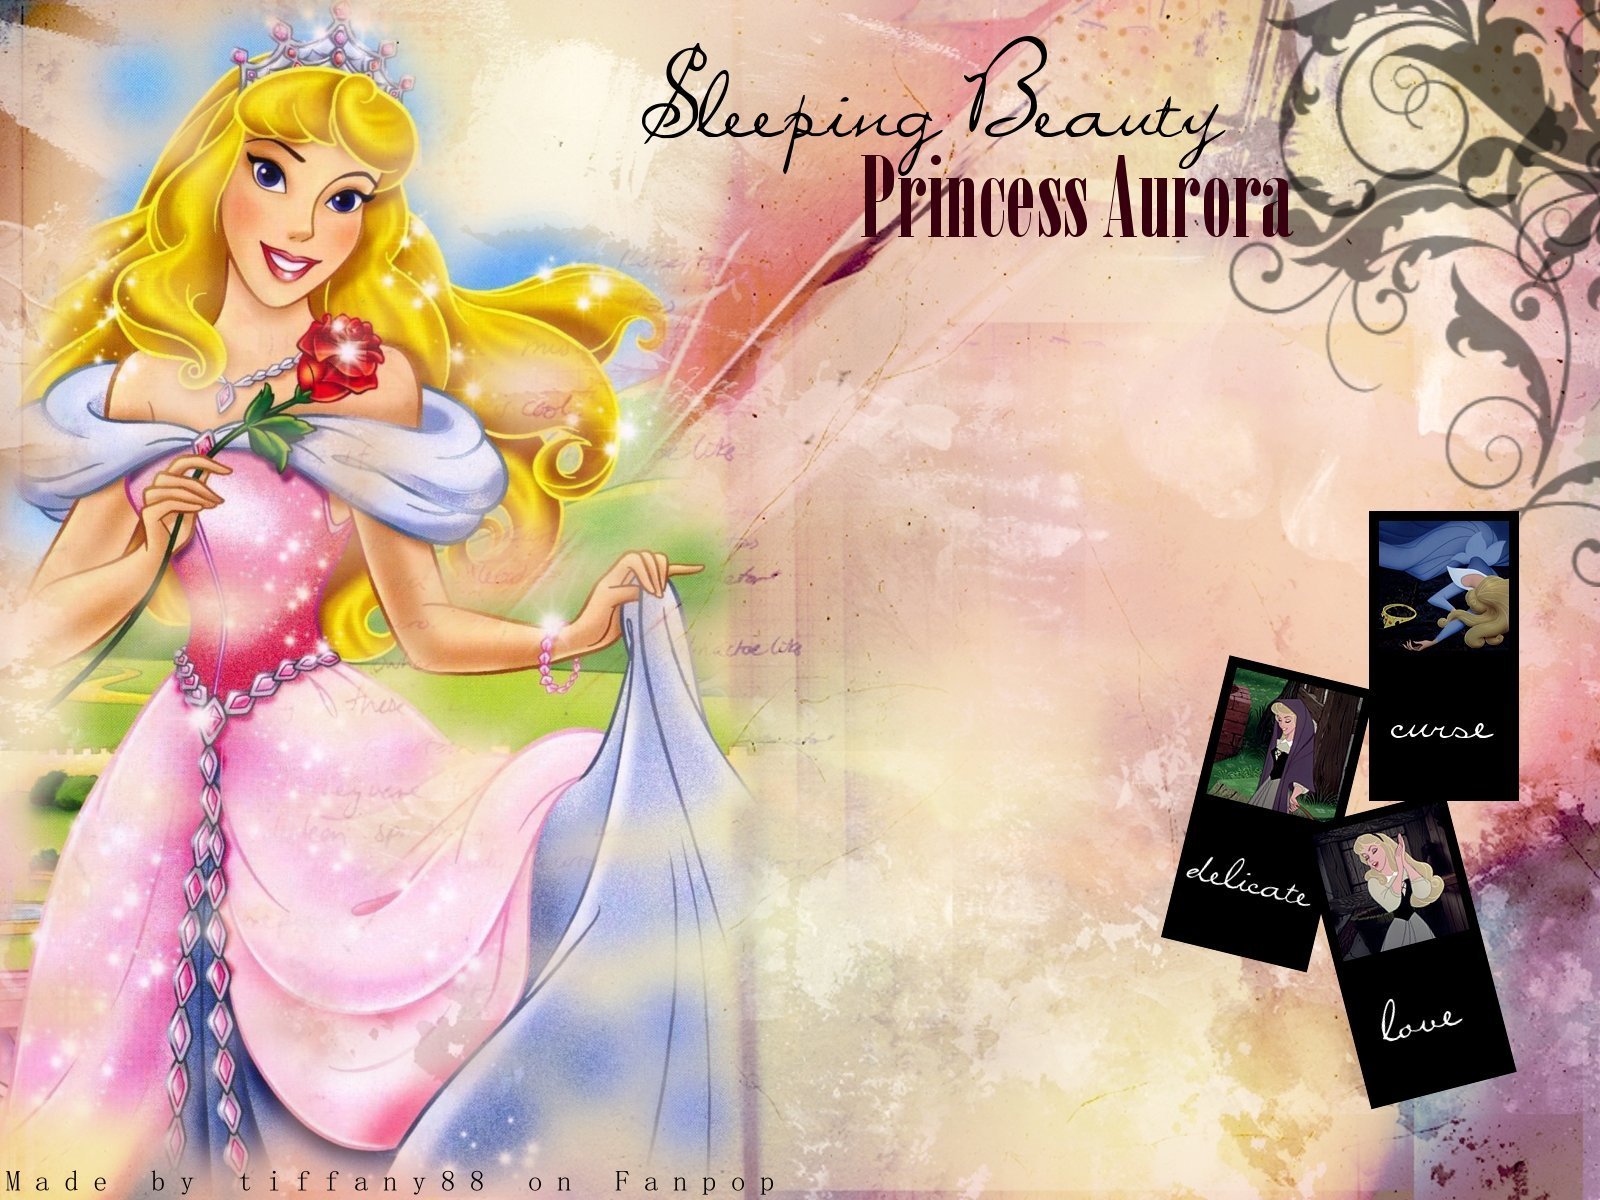 fond d'écran princesse aurore,oeuvre de cg,dessin animé,personnage fictif,jeux,illustration